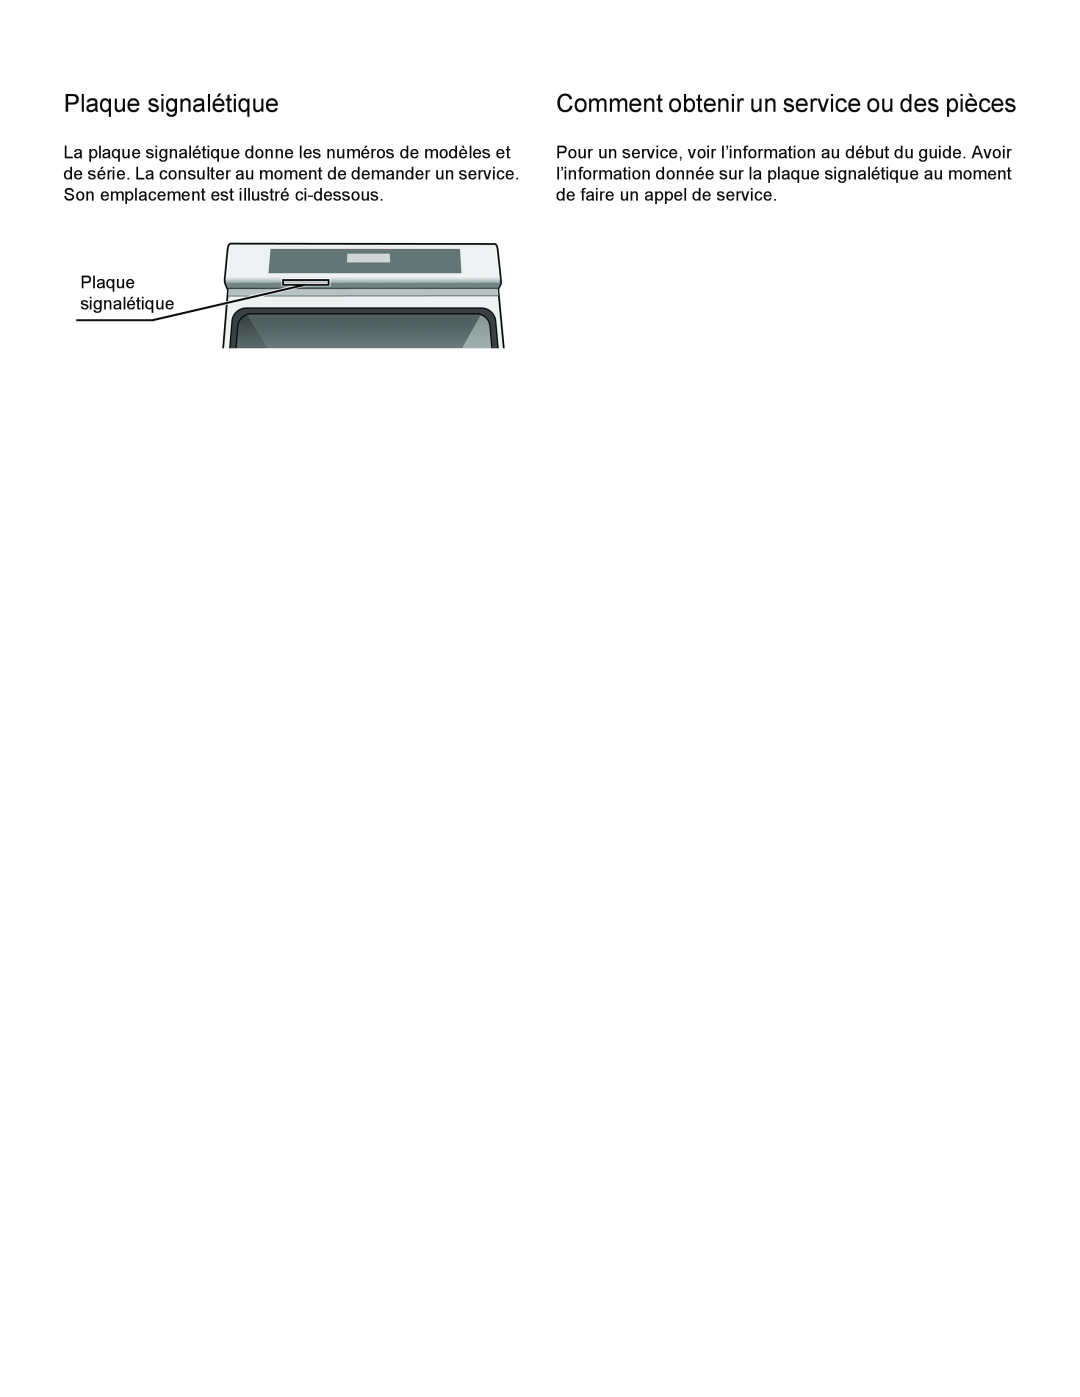 Thermador PODMW301, PODM301 manual Plaque signalétique, Comment obtenir un service ou des pièces 